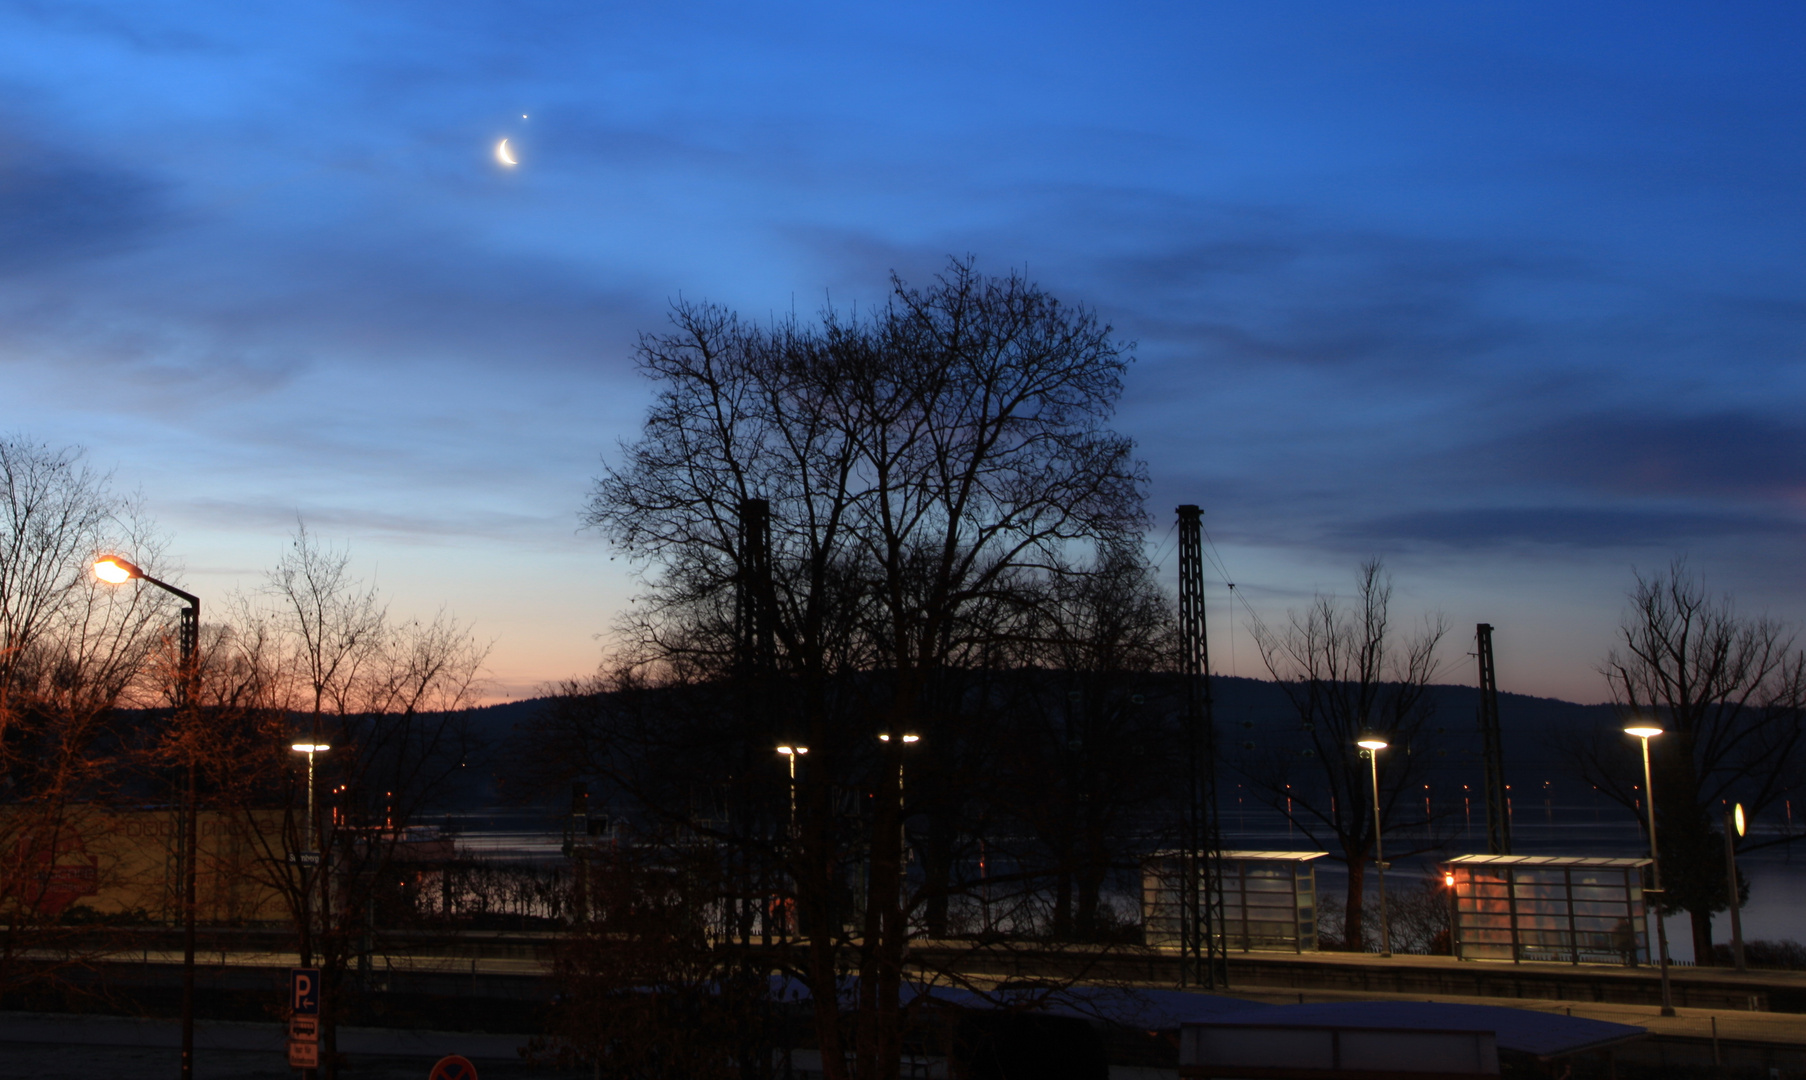 Bahnhof Starnberg mit Mond und Venus